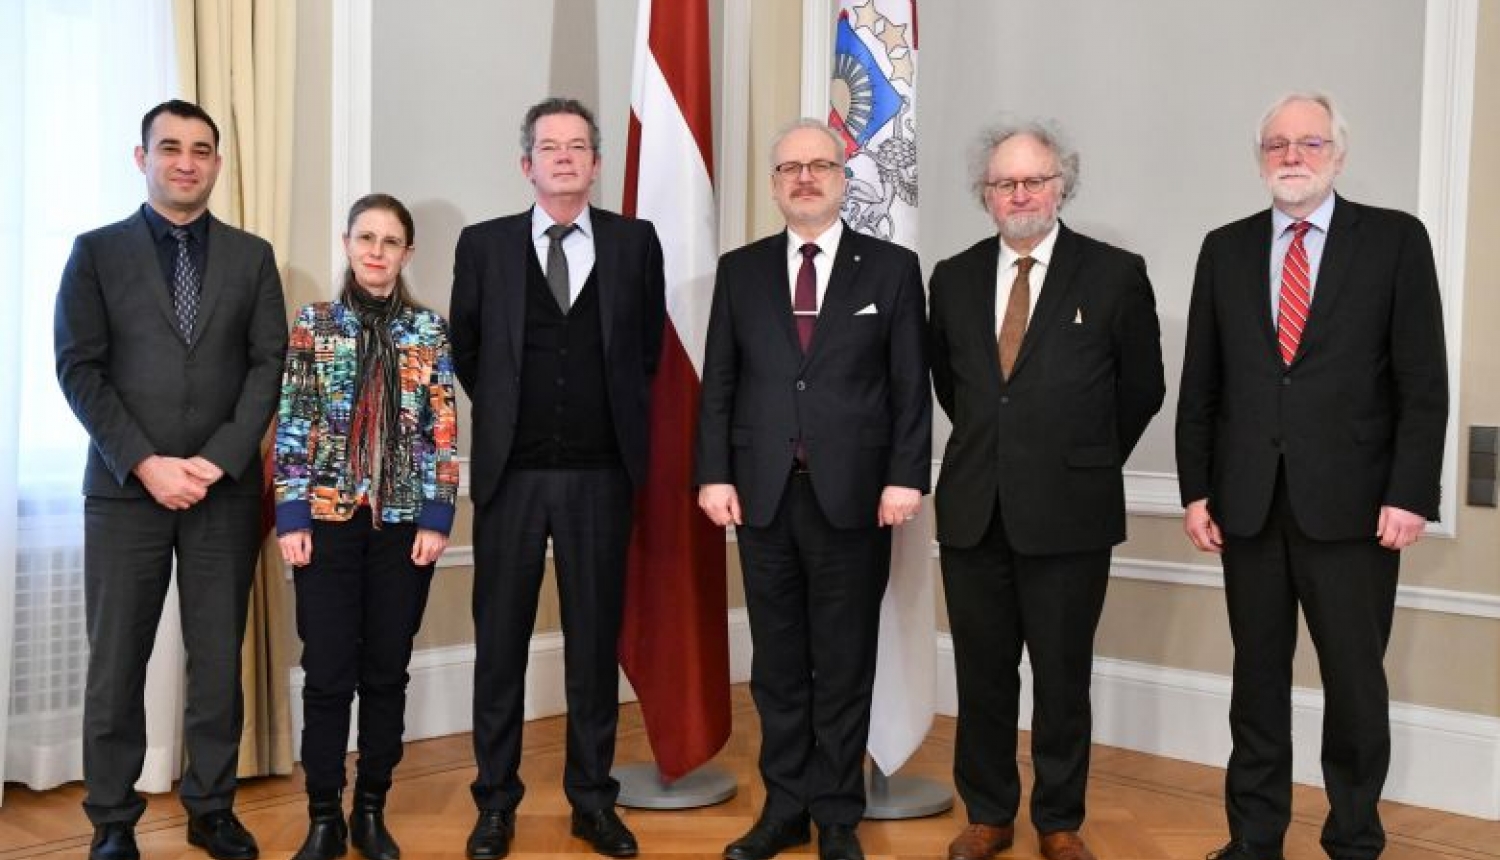 Valsts prezidents: Latvijā kā demokrātiskā valstī stiprinām sabiedrības integrāciju un cieņu pret dažādu tautību kultūrām